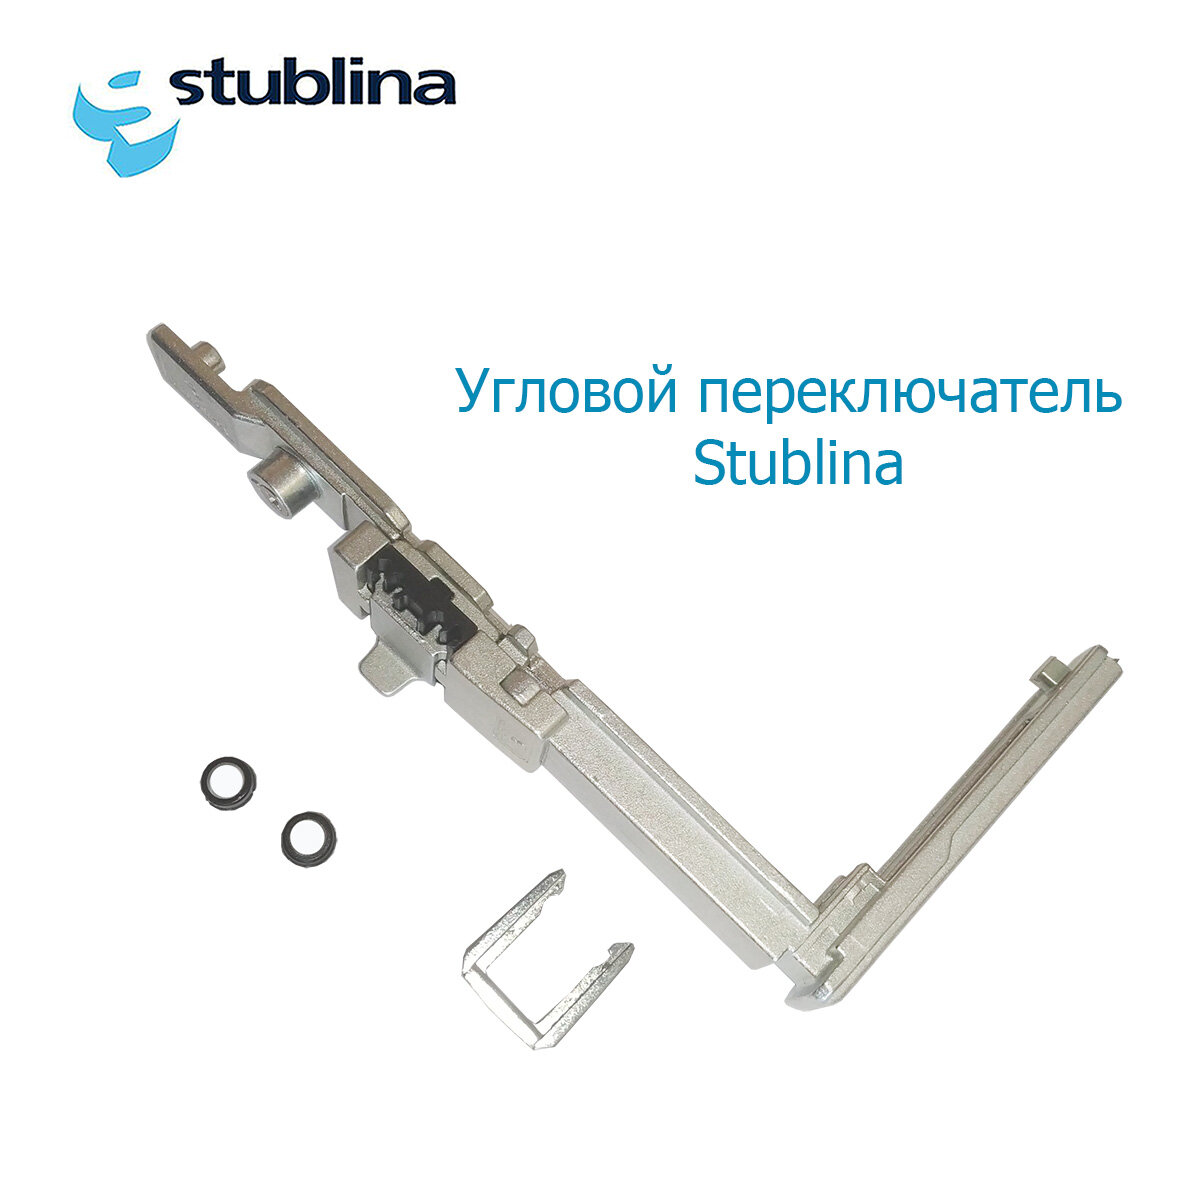 Угловой переключатель с блокиратором Stublina 4070.20